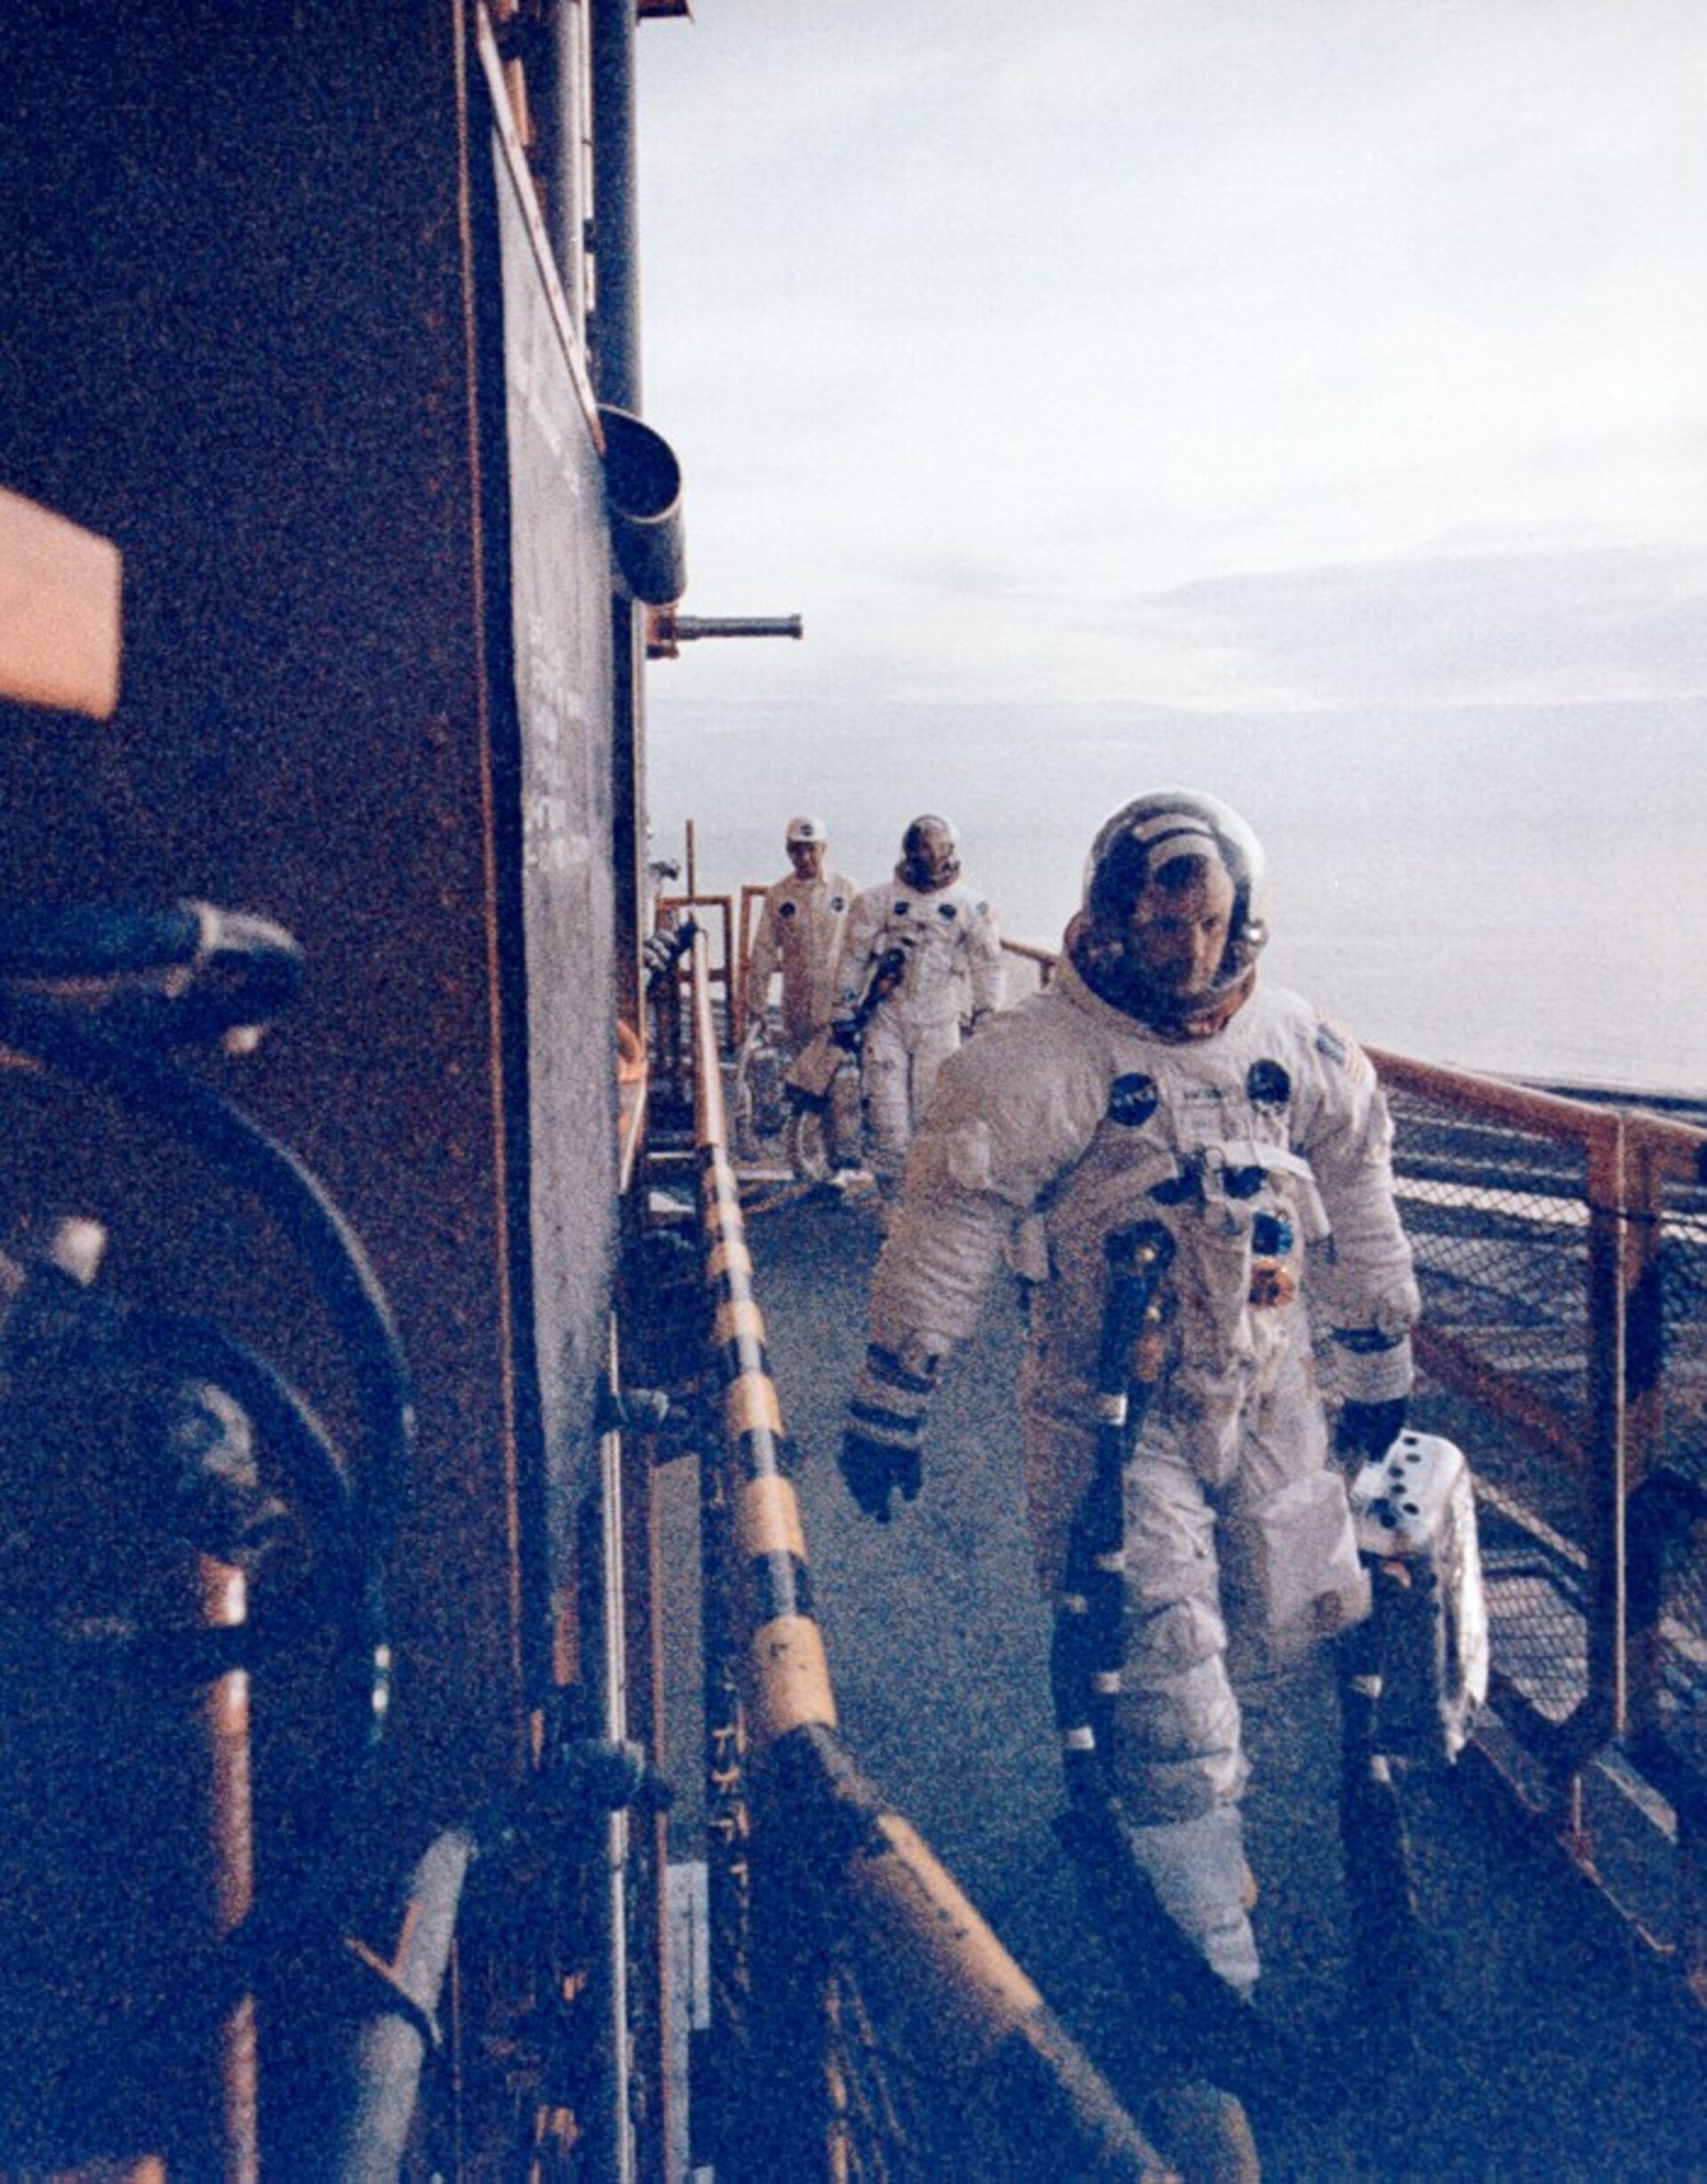 Apollo 11 crew about to enter spacecraft